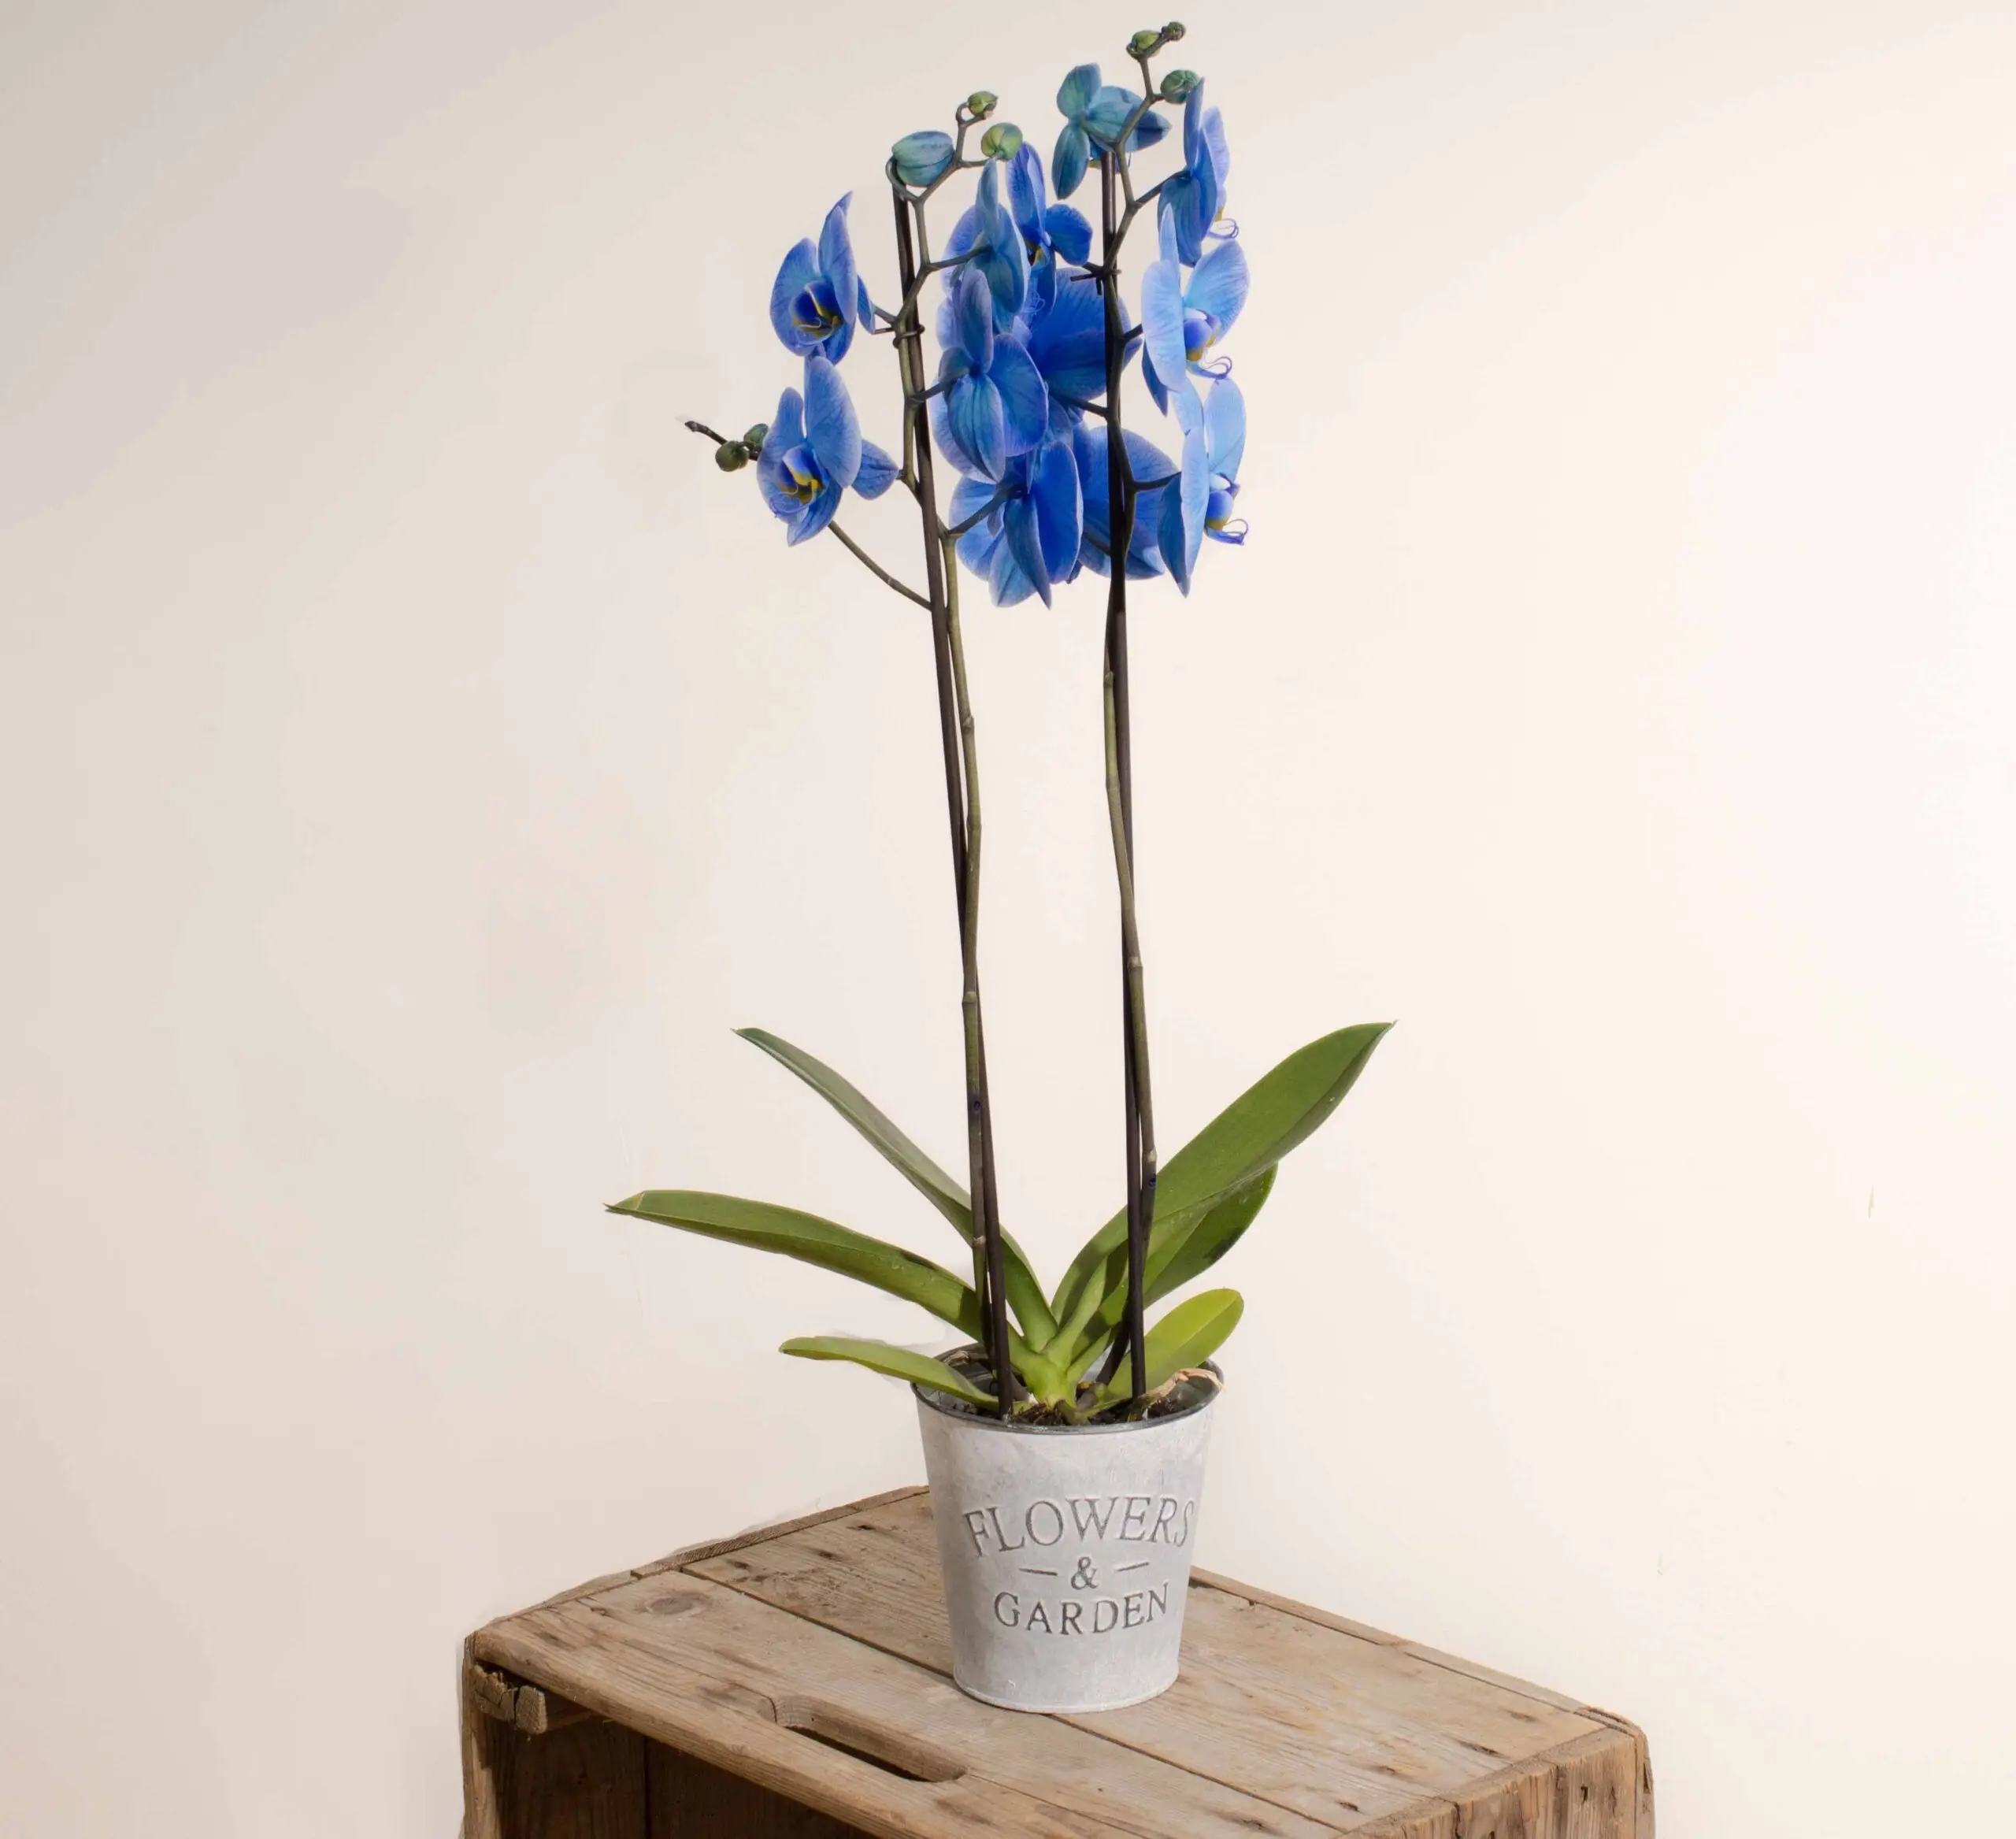 L'entretien des orchidées - France Bleu